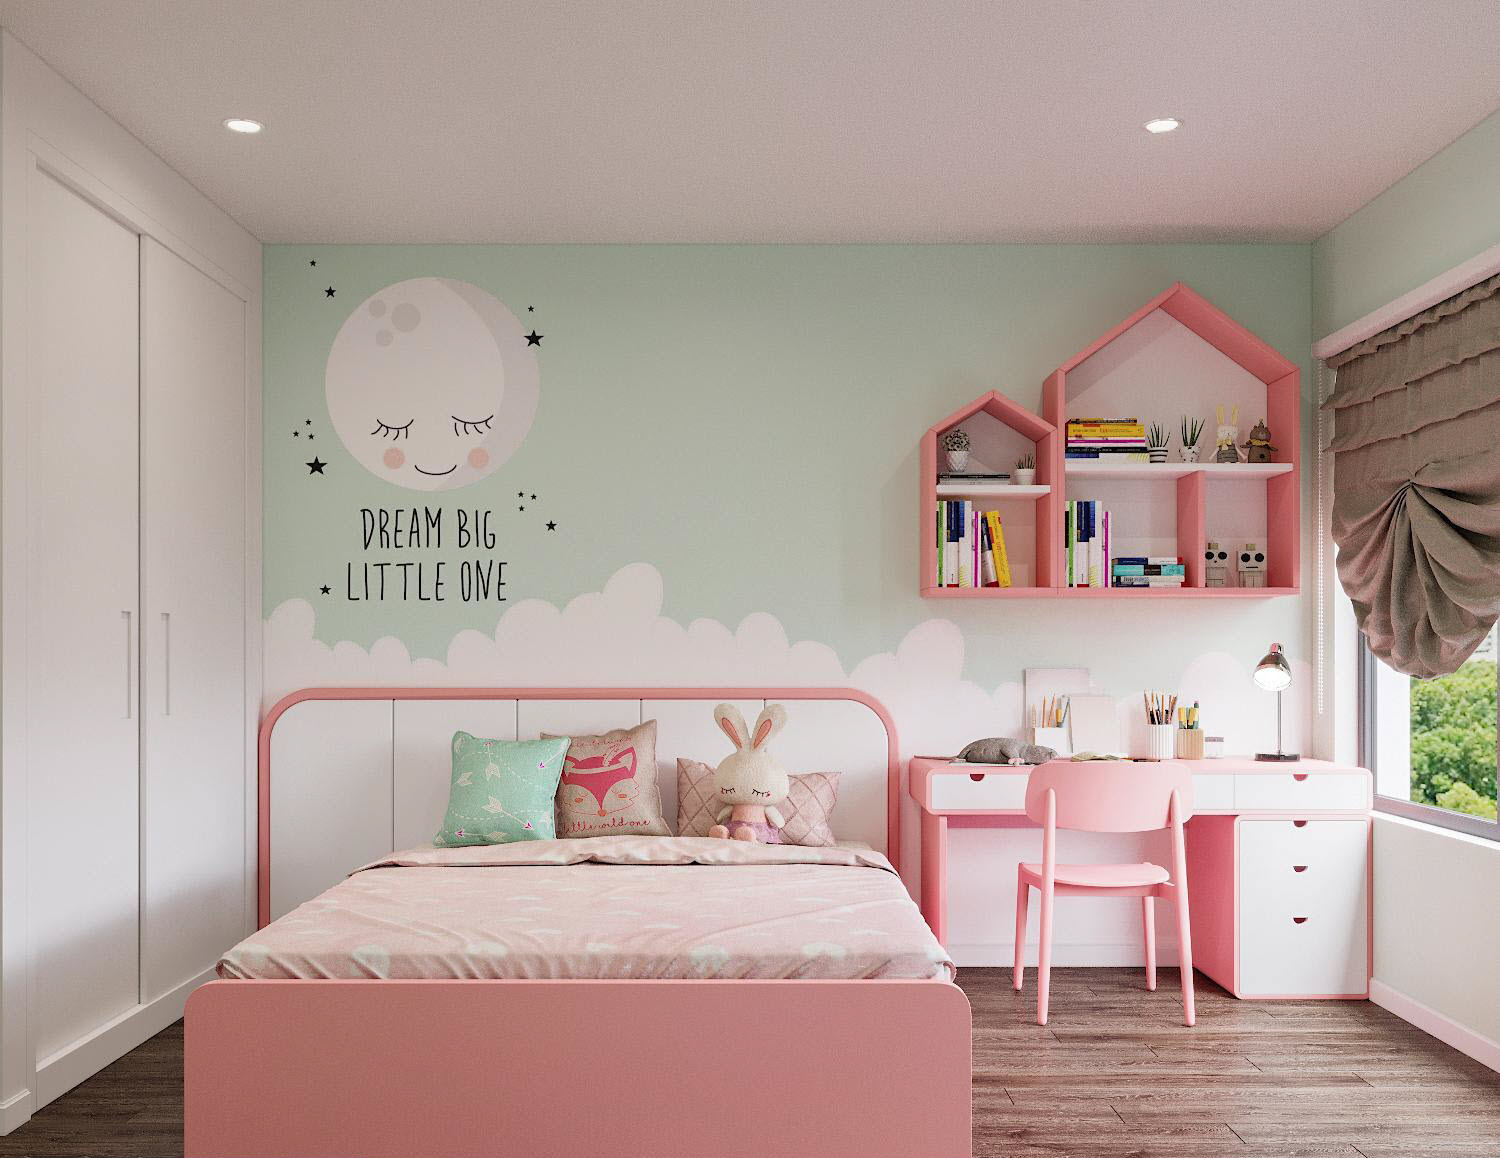 Hai phòng ngủ trẻ em được thiết kế với bảng màu khác hẳn phần còn lại của căn hộ, phù hợp với độ tuổi và sở thích của các bé.